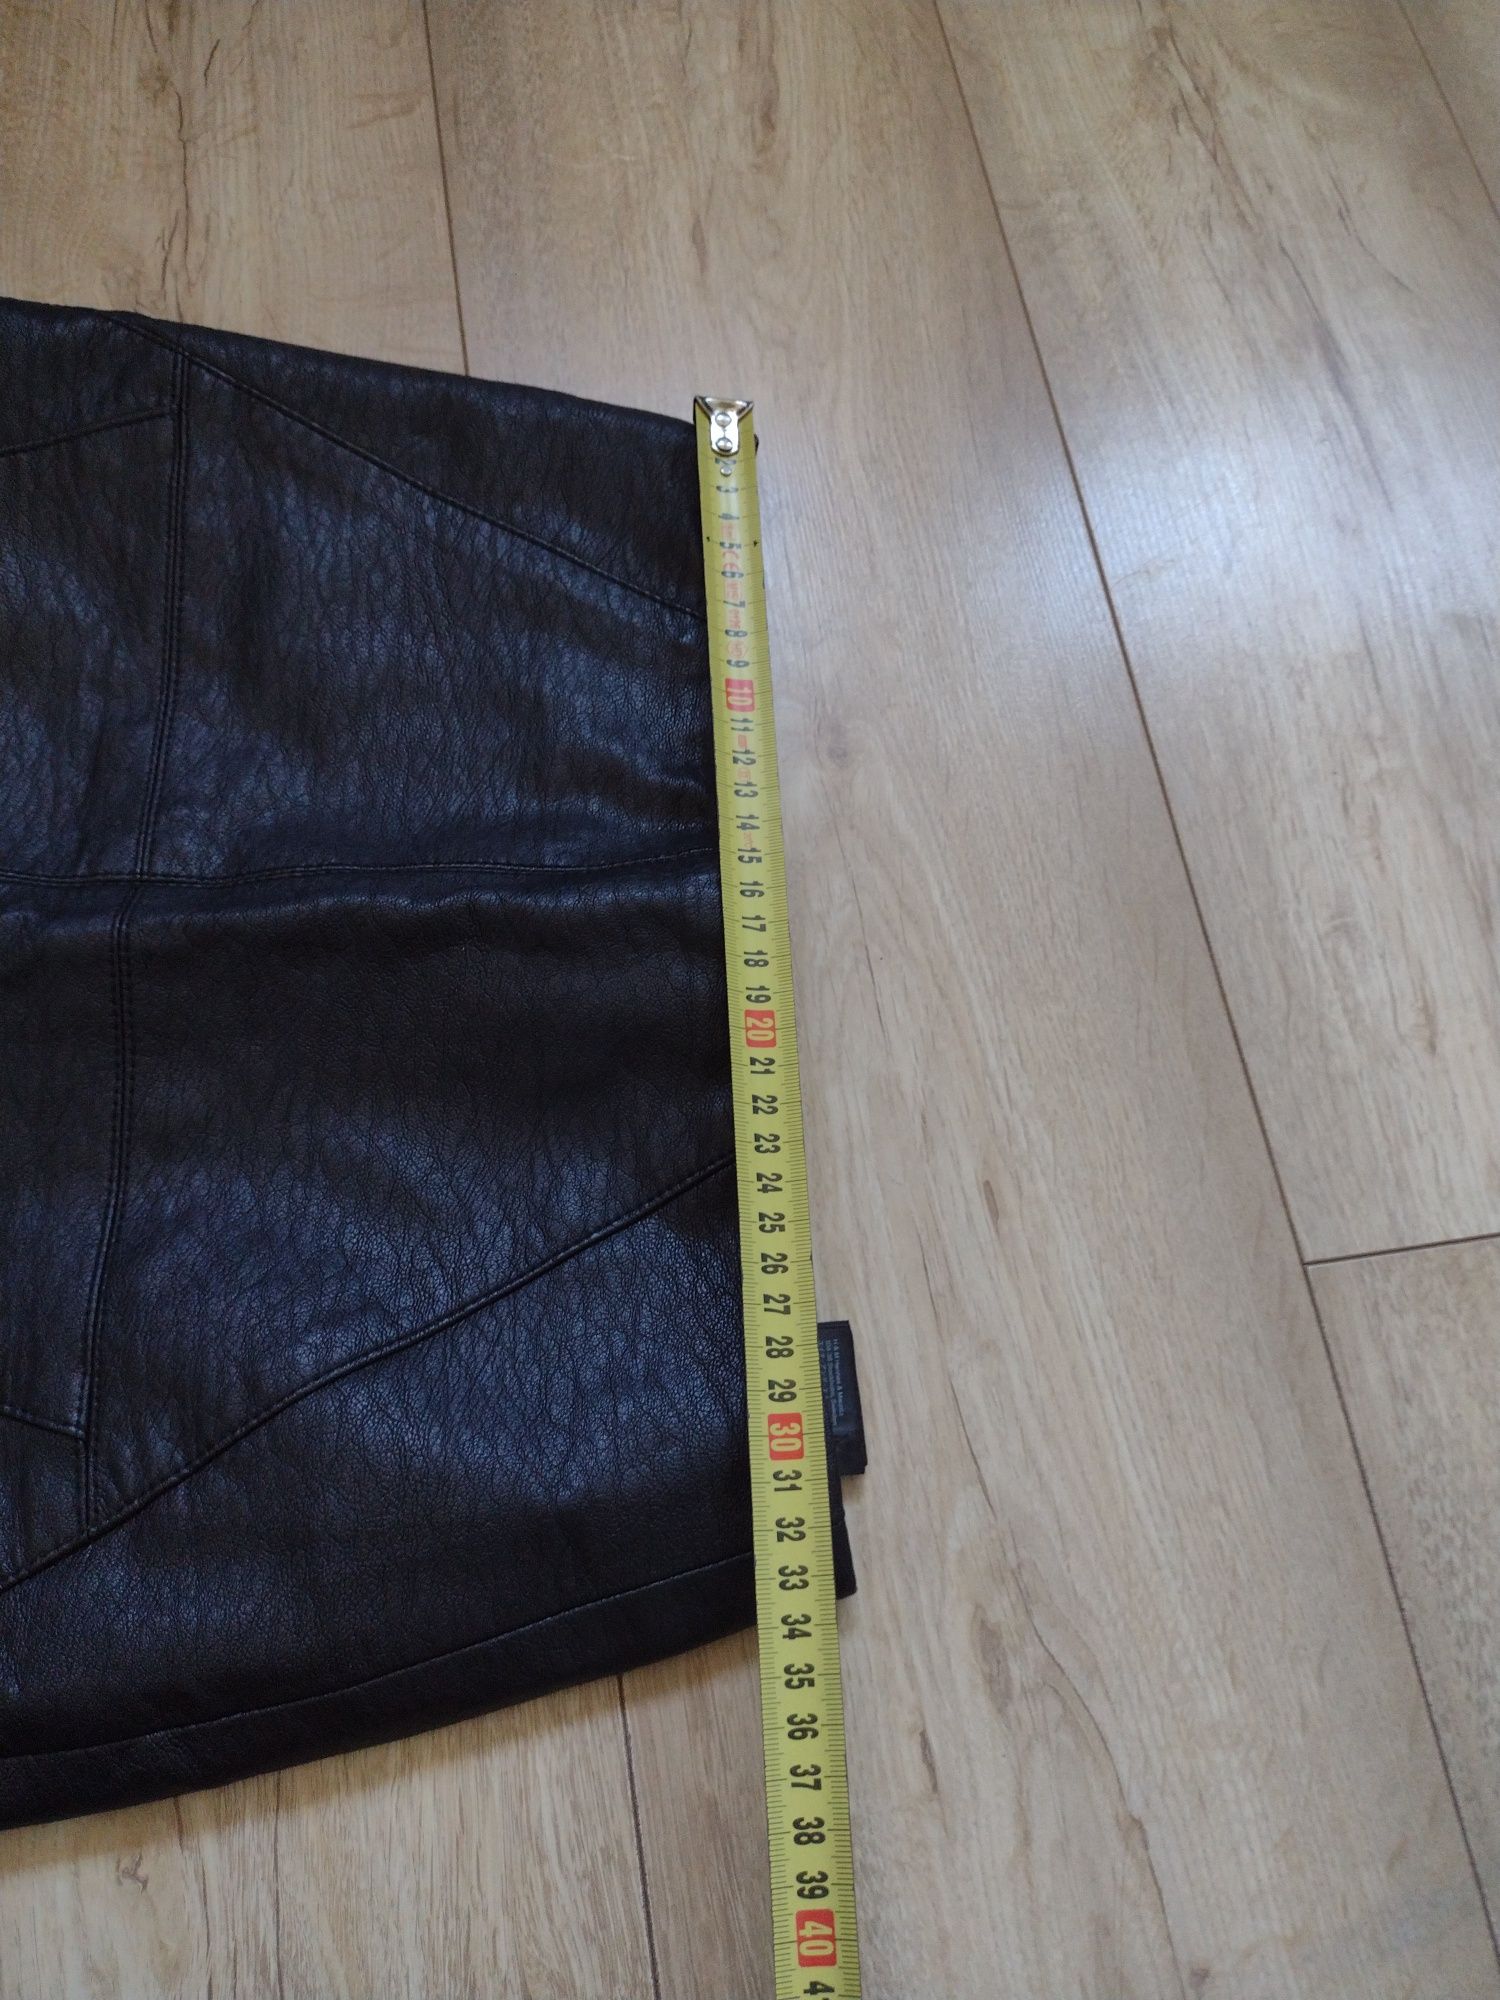 Czarna spódnica miniowka h&m r. 34 skórzana